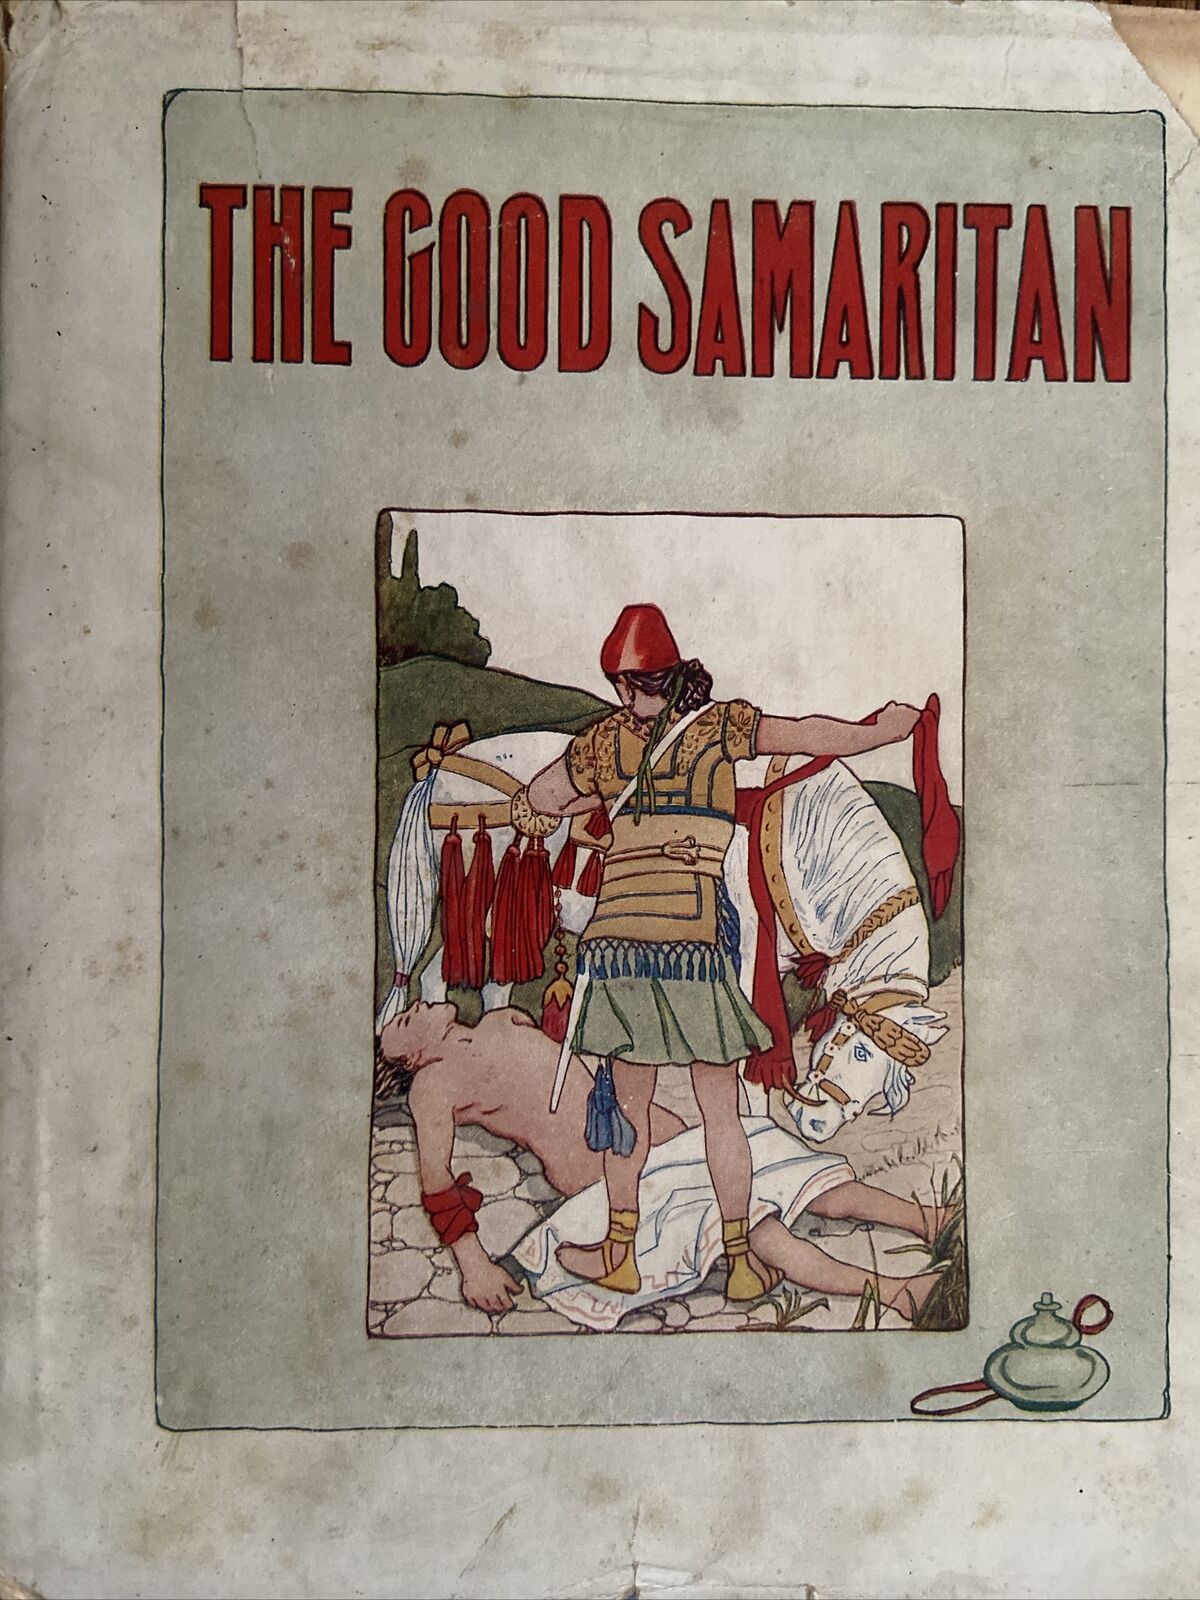 1925 Original Josephine Pollard: The Good Samaritan and The Other Bible Stories